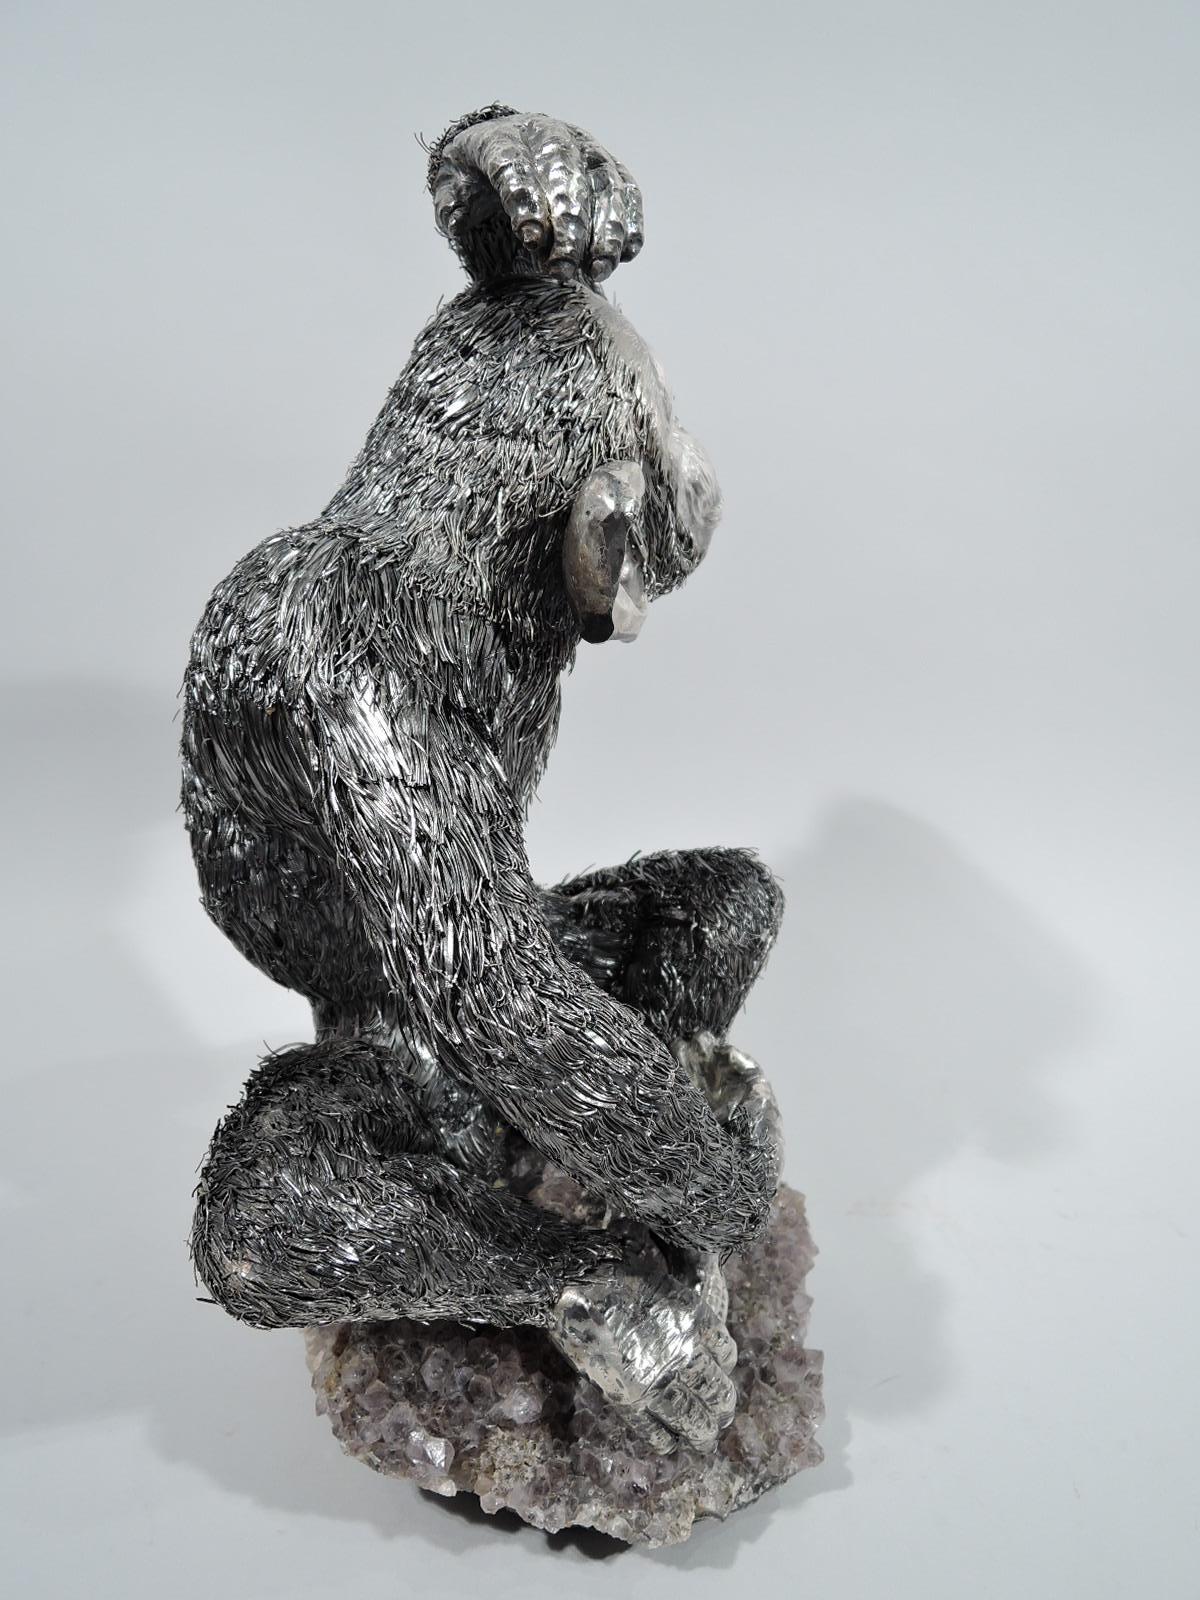 Figurine animale en argent 800, sensible et attachante. Fabriqué par Buccellati en Italie. Un chimpanzé au bras levé, aux grandes oreilles rigolotes et au visage expressif est assis sur un socle en cristal d'améthyste aux pieds joints. Un primate